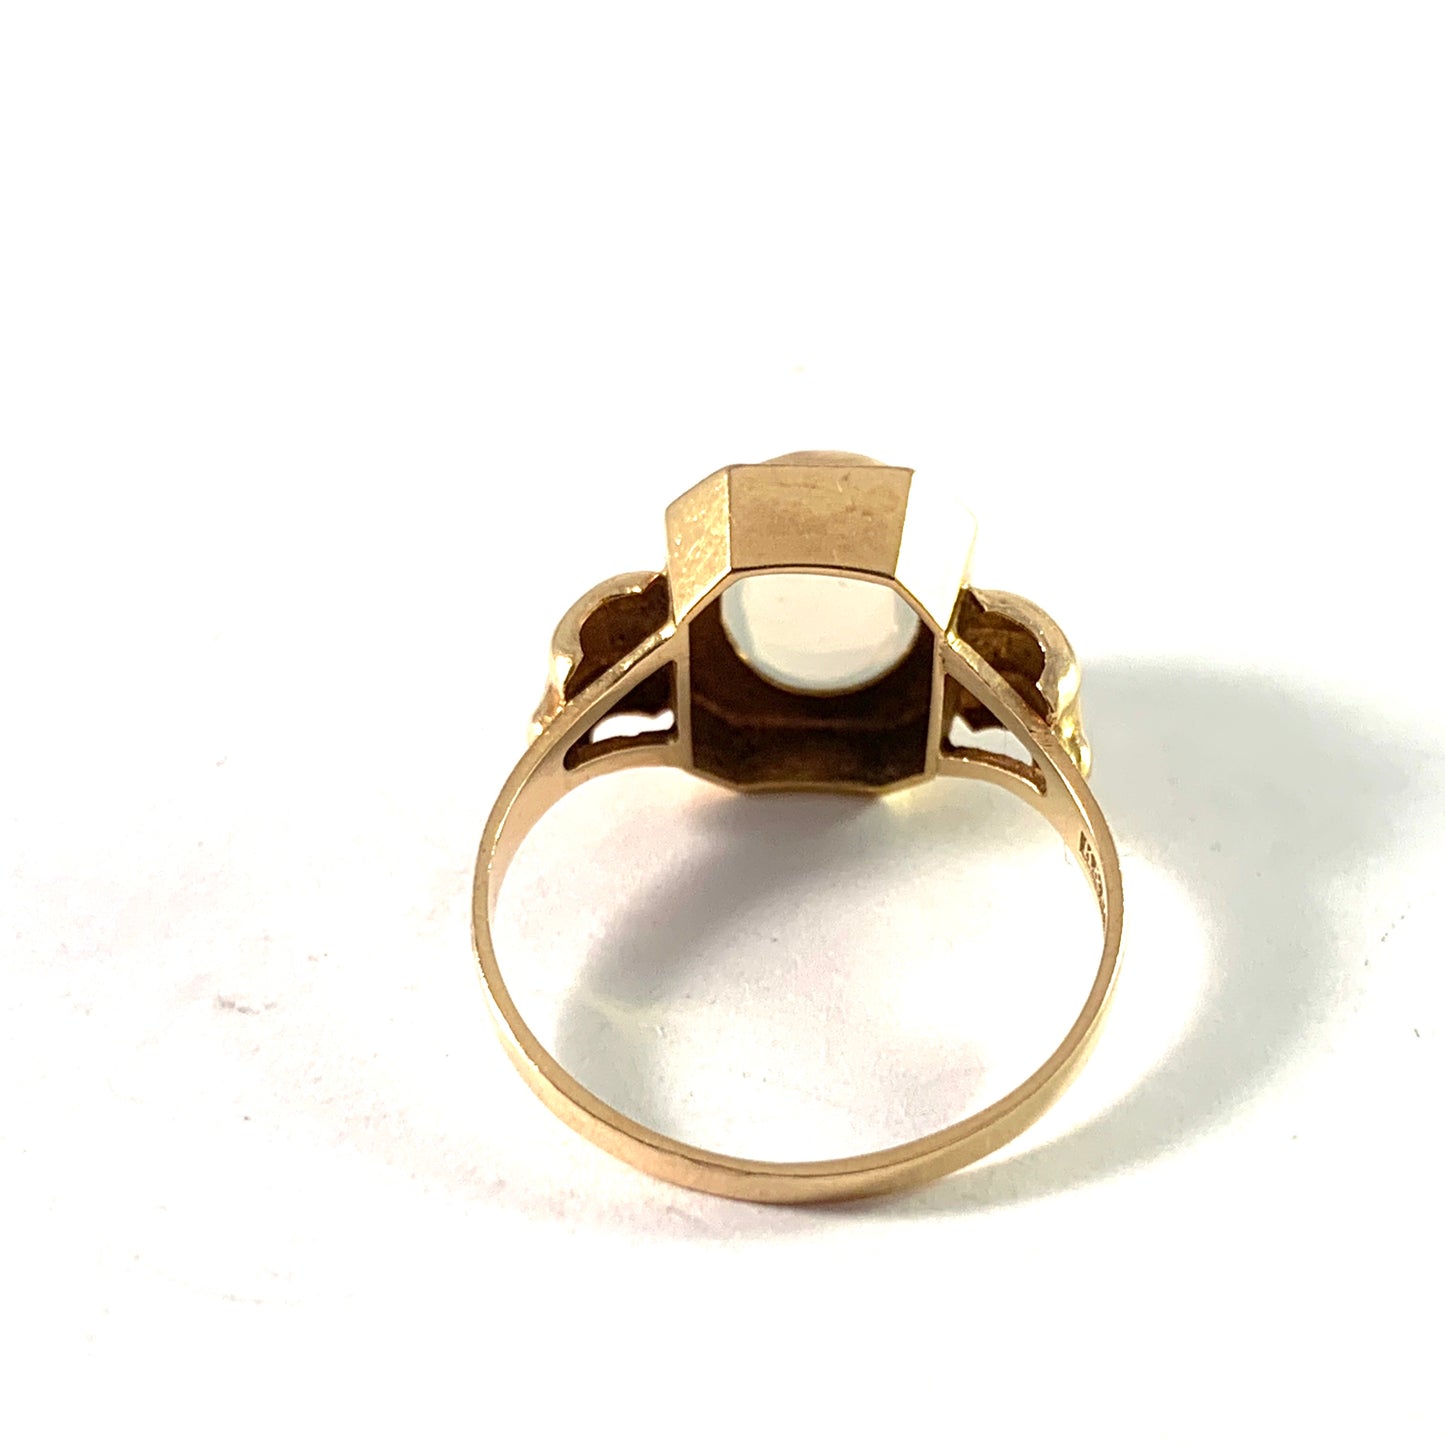 Ceson, Gothenburg, Sweden 1955. Vintage 18k Gold Moonstone Ring.